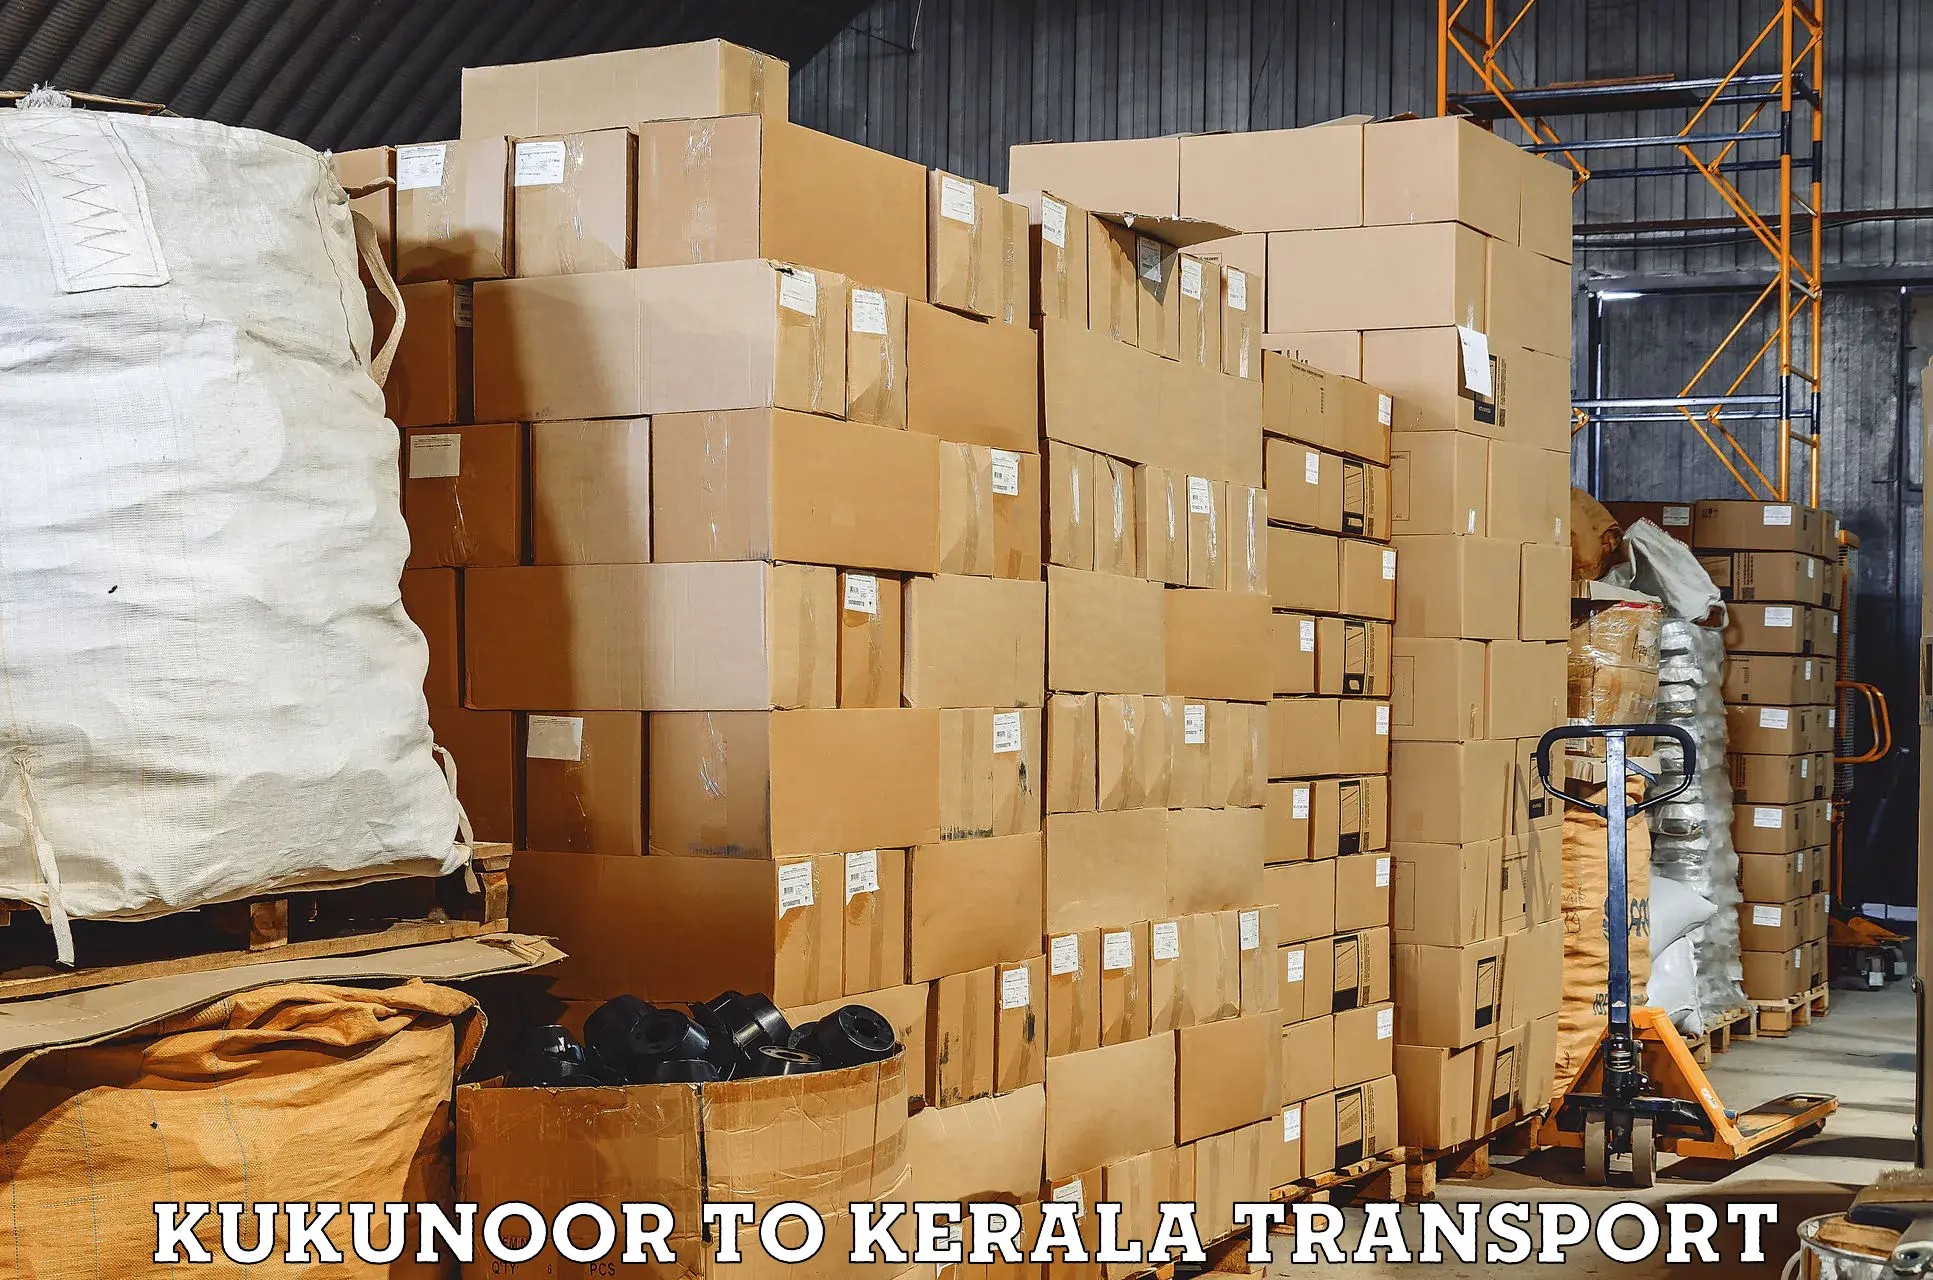 Road transport online services Kukunoor to Kottayam